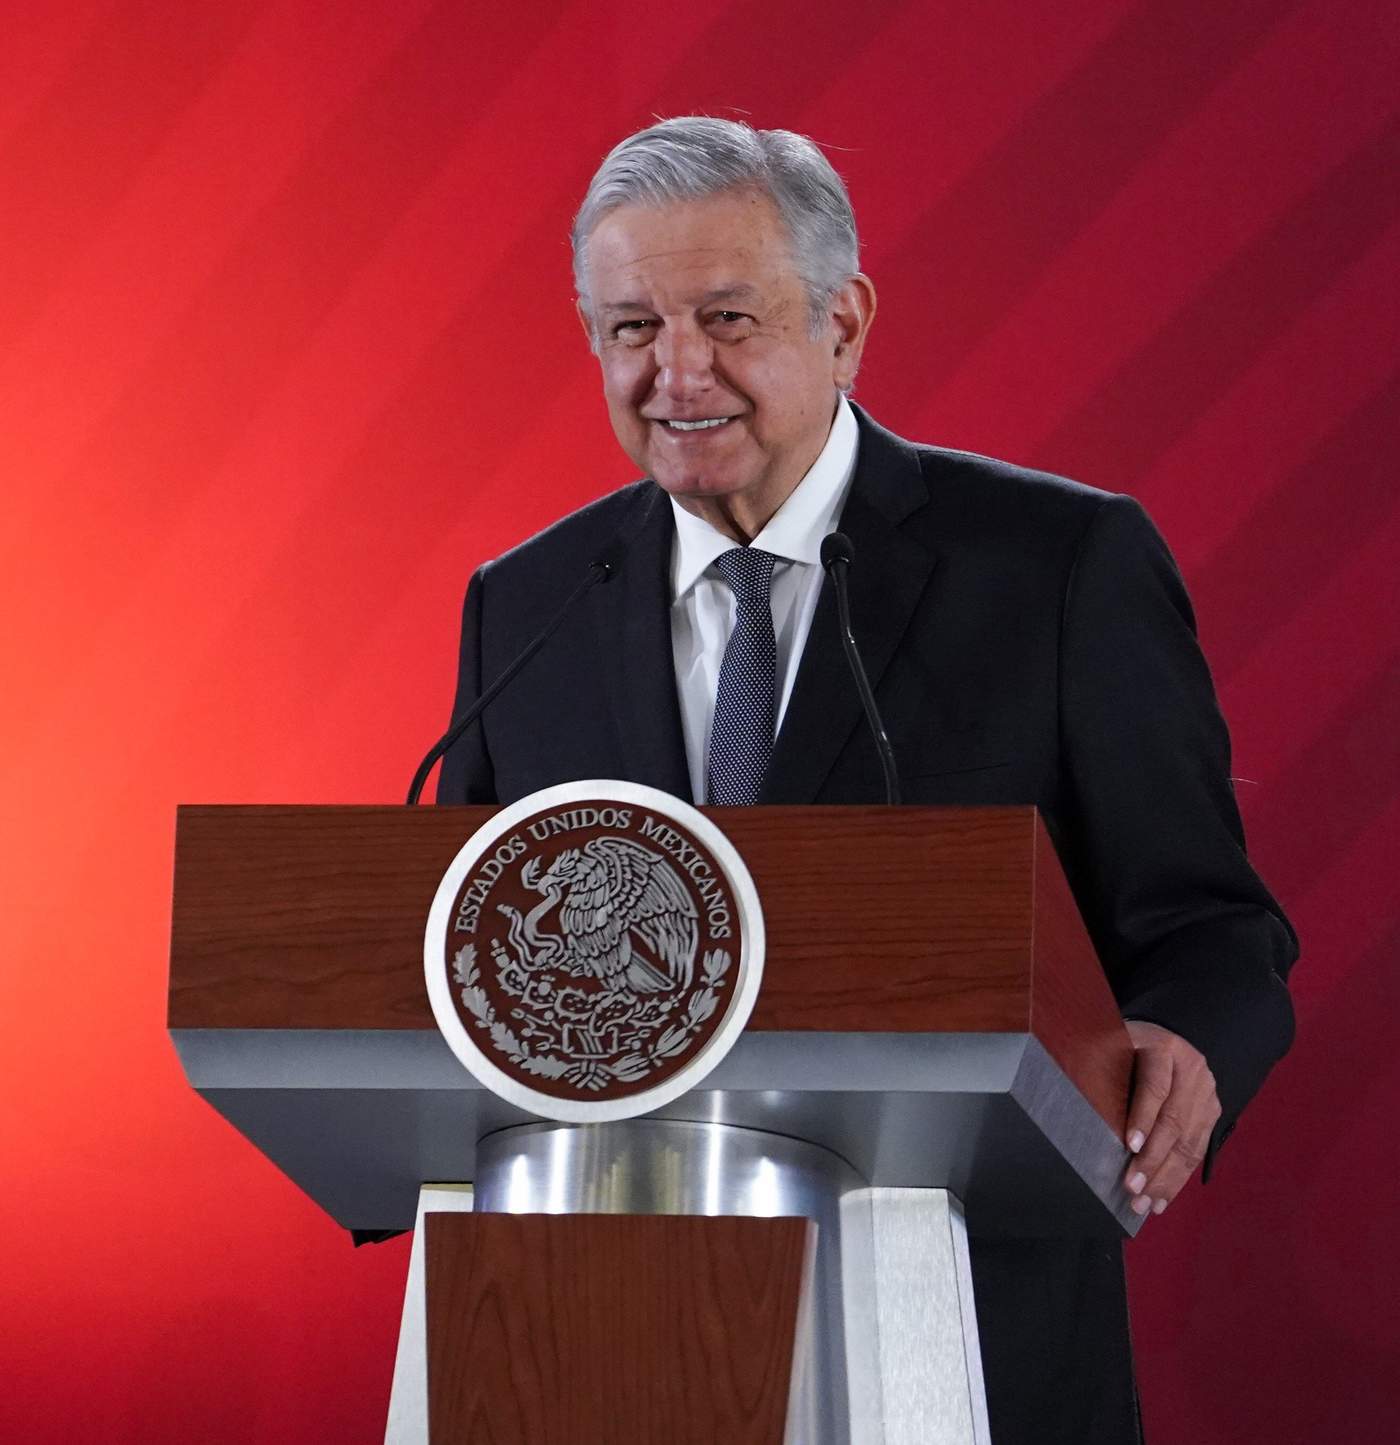 El presidente Andrés Manuel López Obrador realizará su segunda gira del año por Michoacán, el próximo 8 de febrero, cuando estará en el municipio de Huetamo, para entregar apoyos y recursos a 11 mil productores agropecuarios, a través del programa Producción para el Bienestar. (EFE)